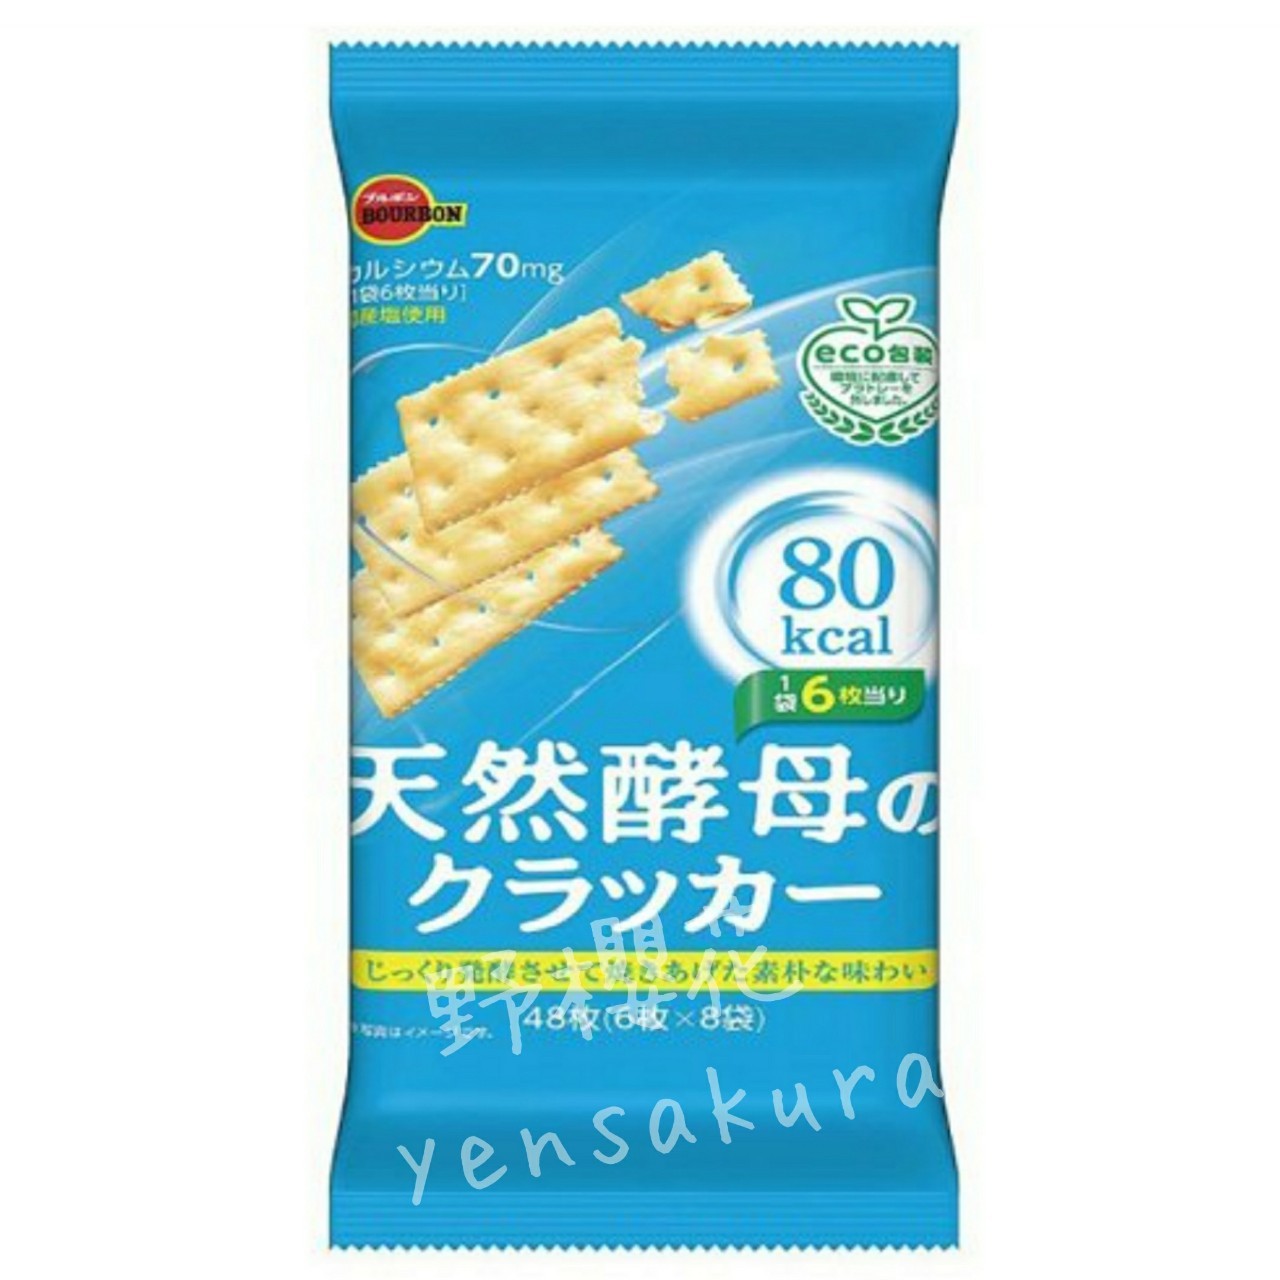 日本天然酵母餅乾(8袋×6枚) 日本製4901360343010[野櫻花]